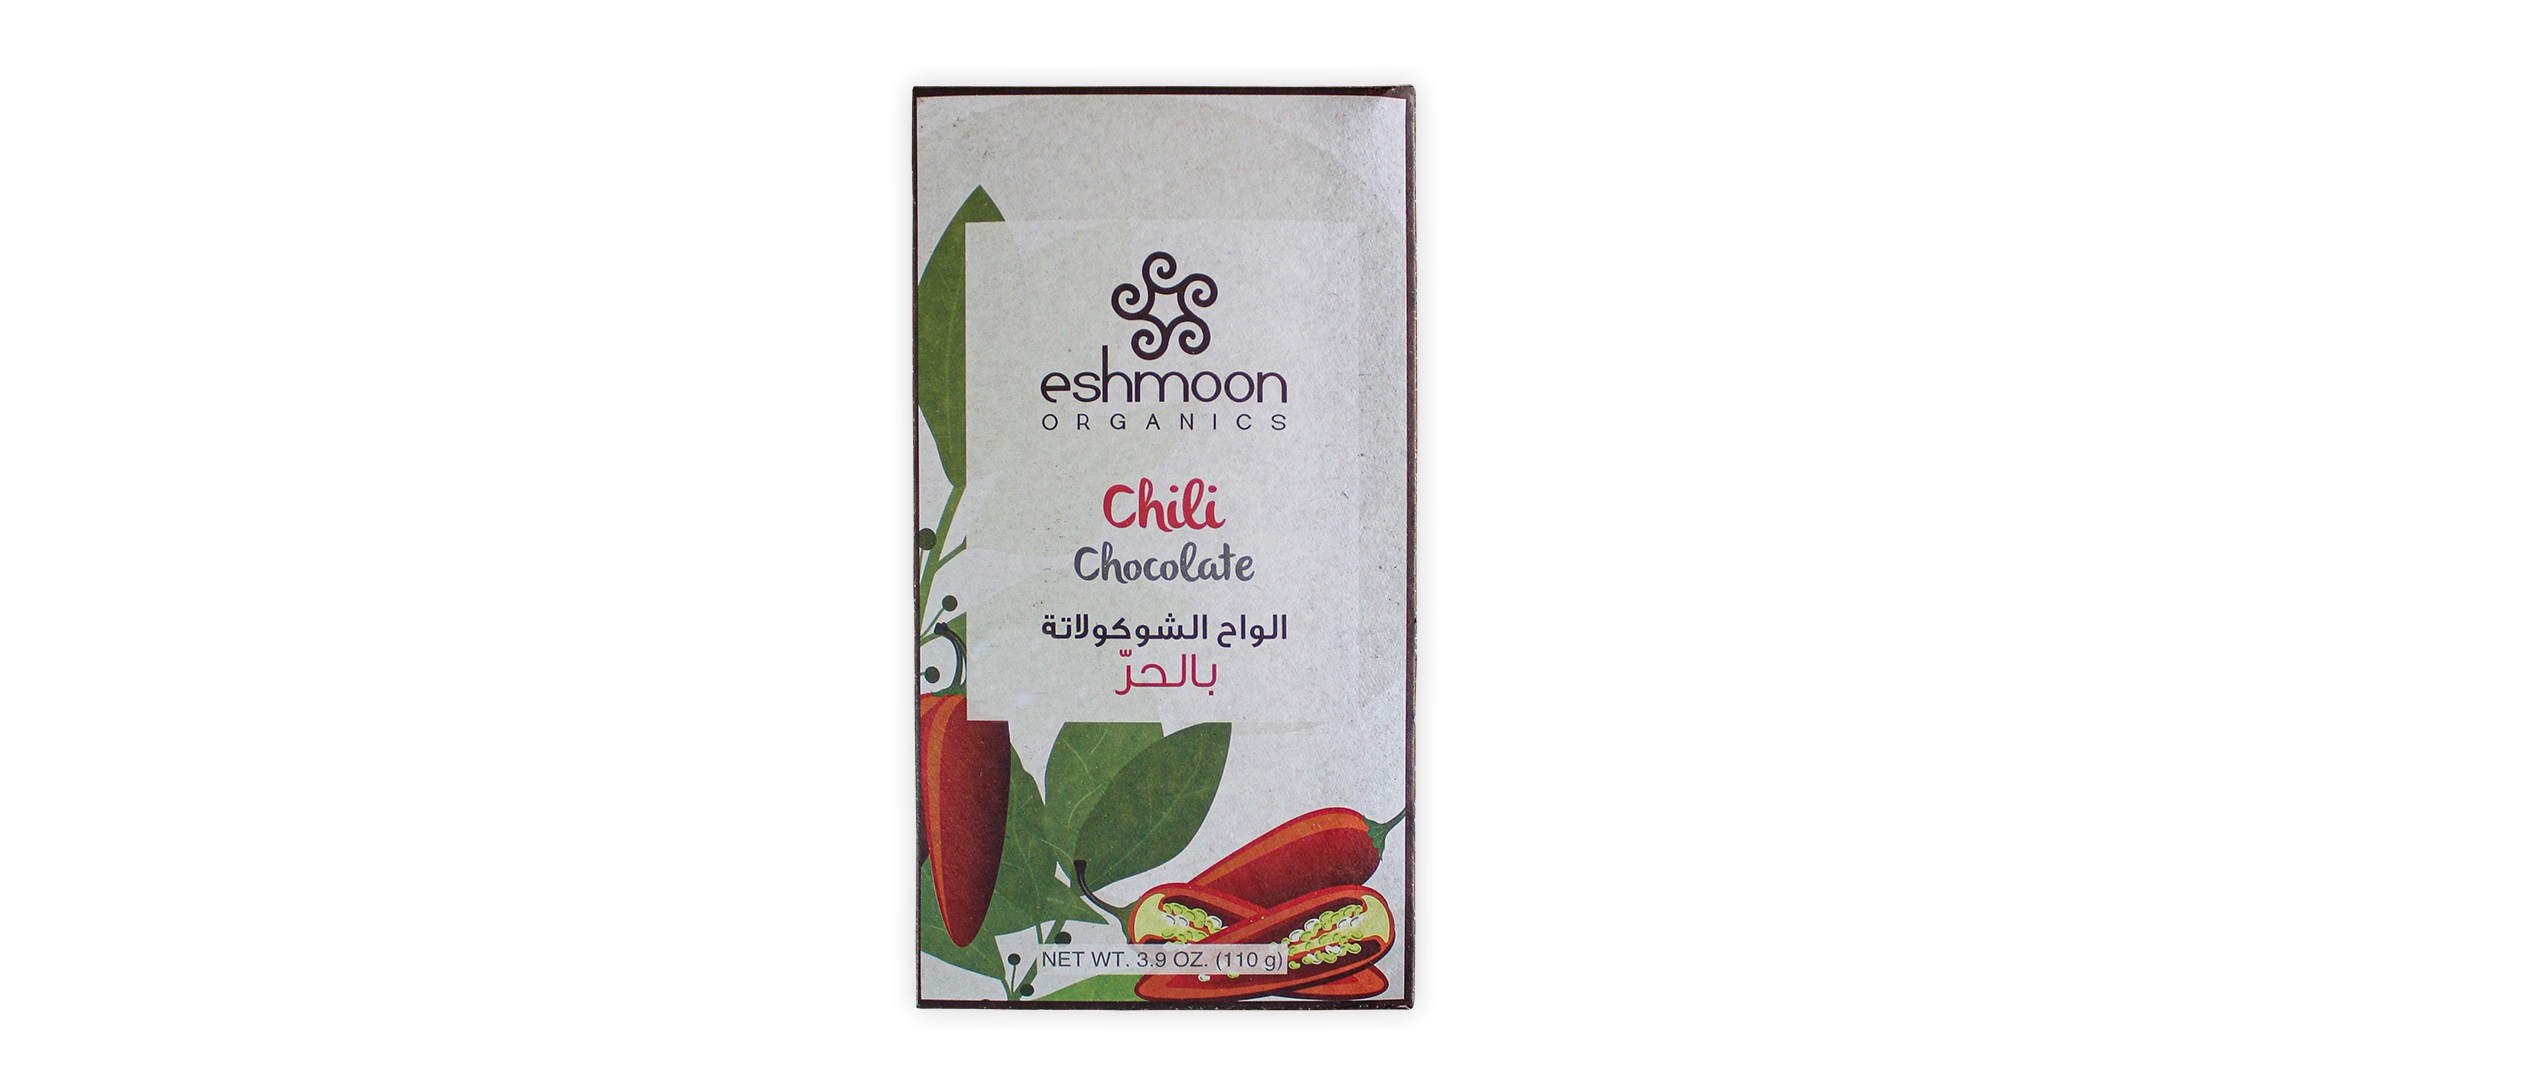 Eshmoon Chili Dark Chocolate 110g